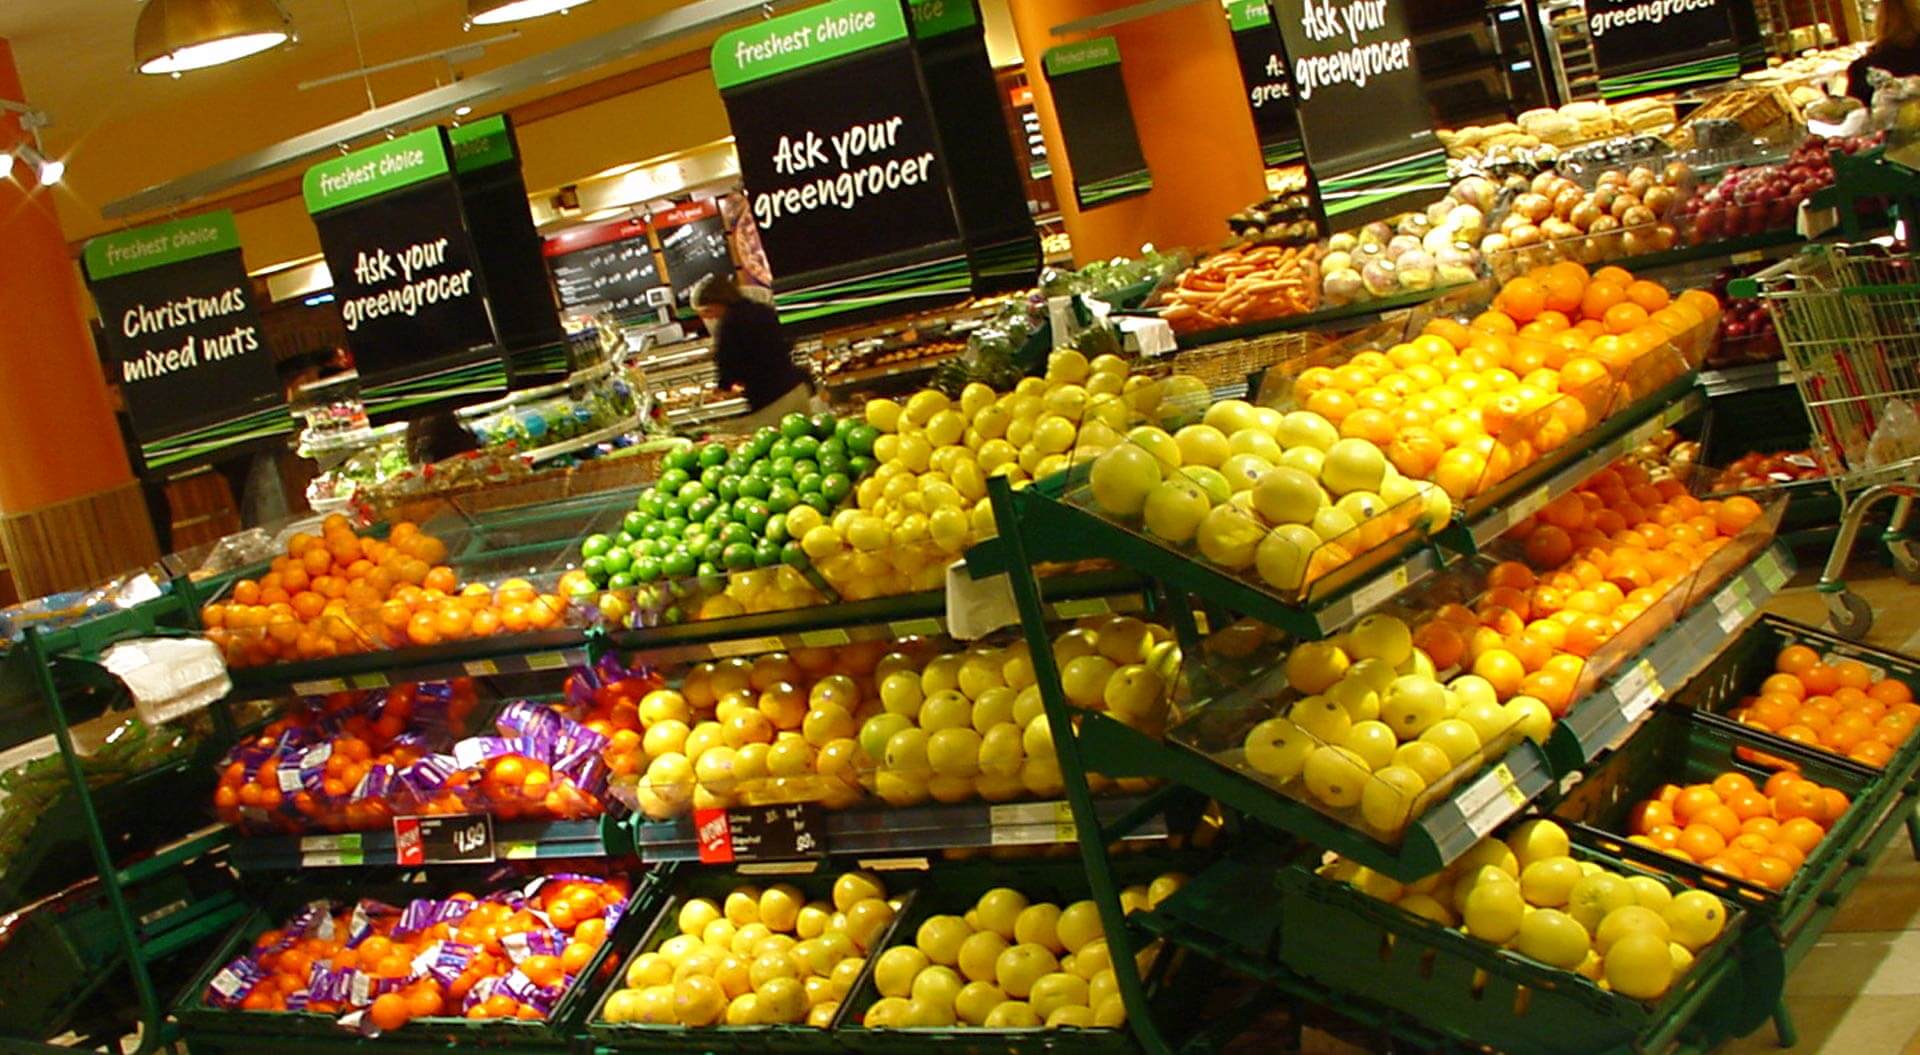 Safeway fresh fproduce merchandising system design in supermarkets